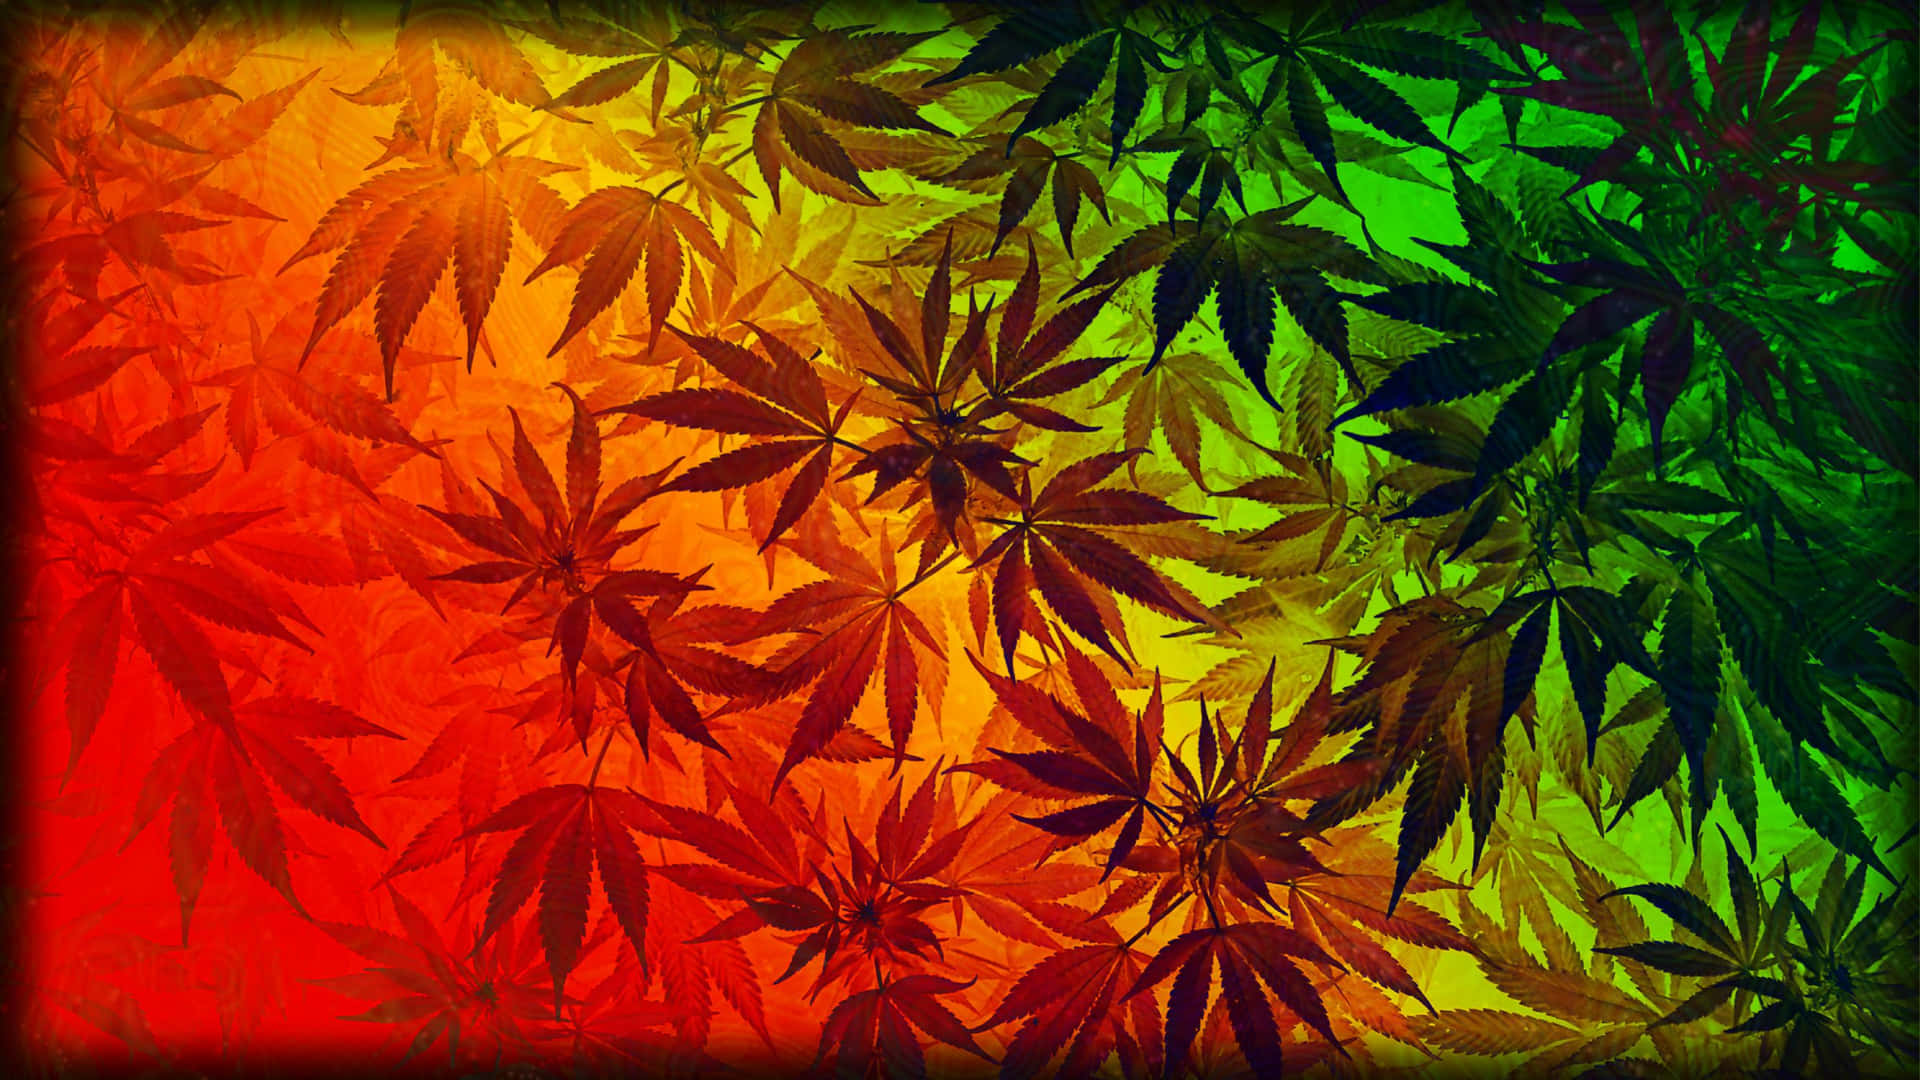 Unosfondo Affascinante E Vibrante A Tema 420 Con Foglie Di Cannabis Assortite E Colori Neon.